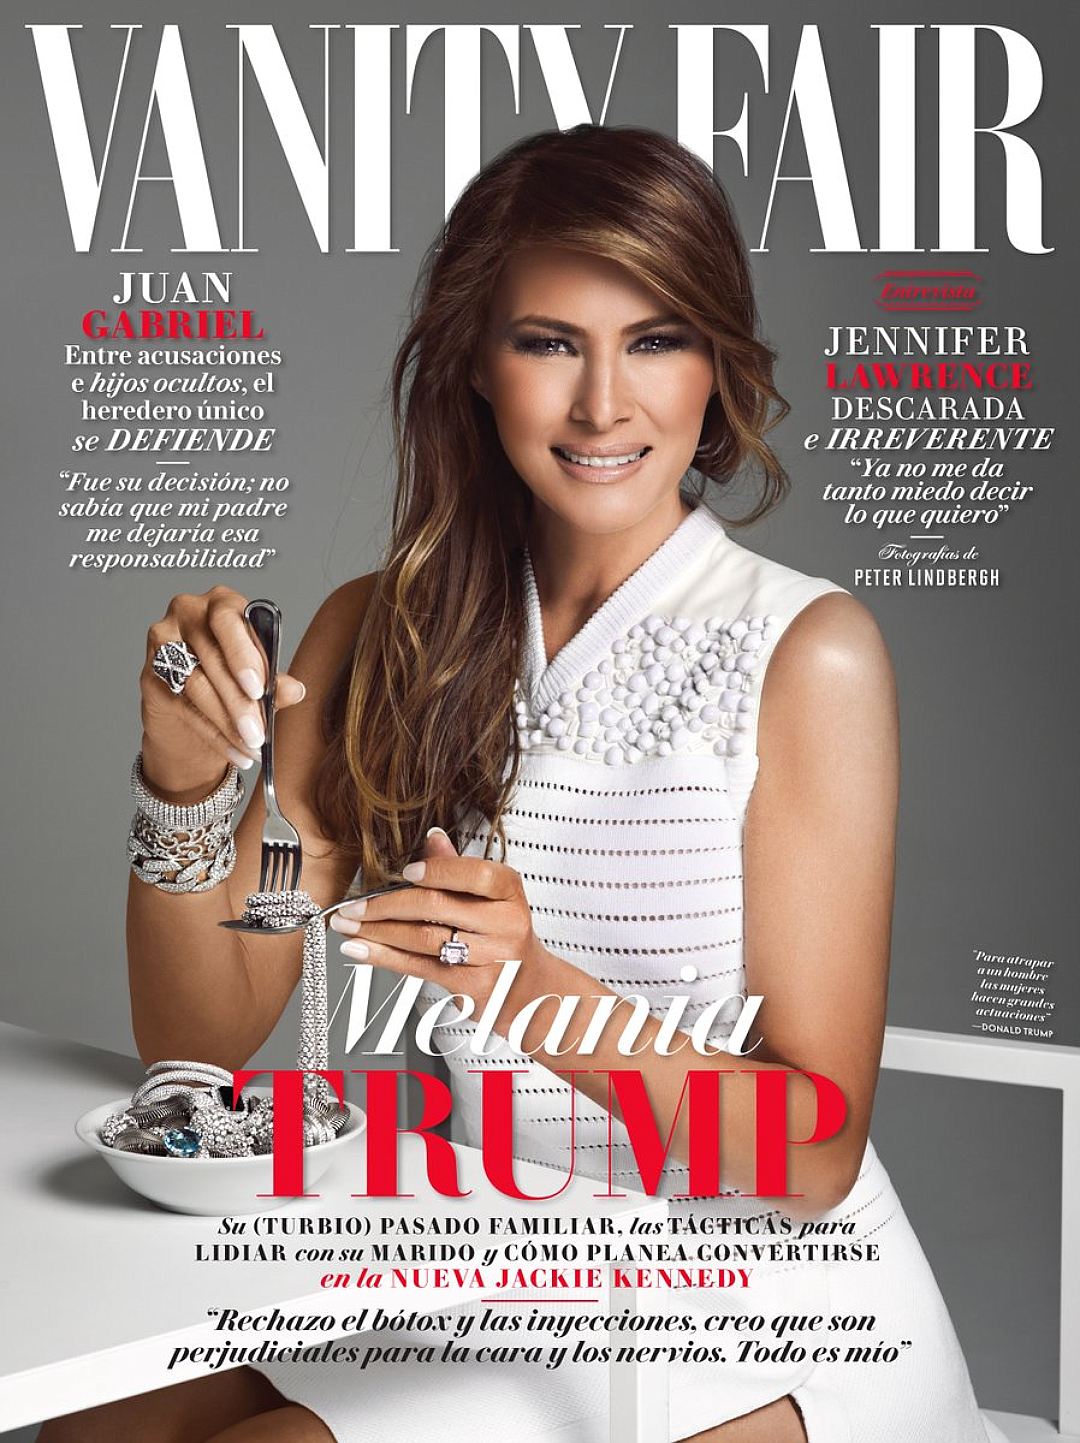 Мелания Трамп на обложке мексиканского журнала Vanity Fair ела ювелирные украшения.